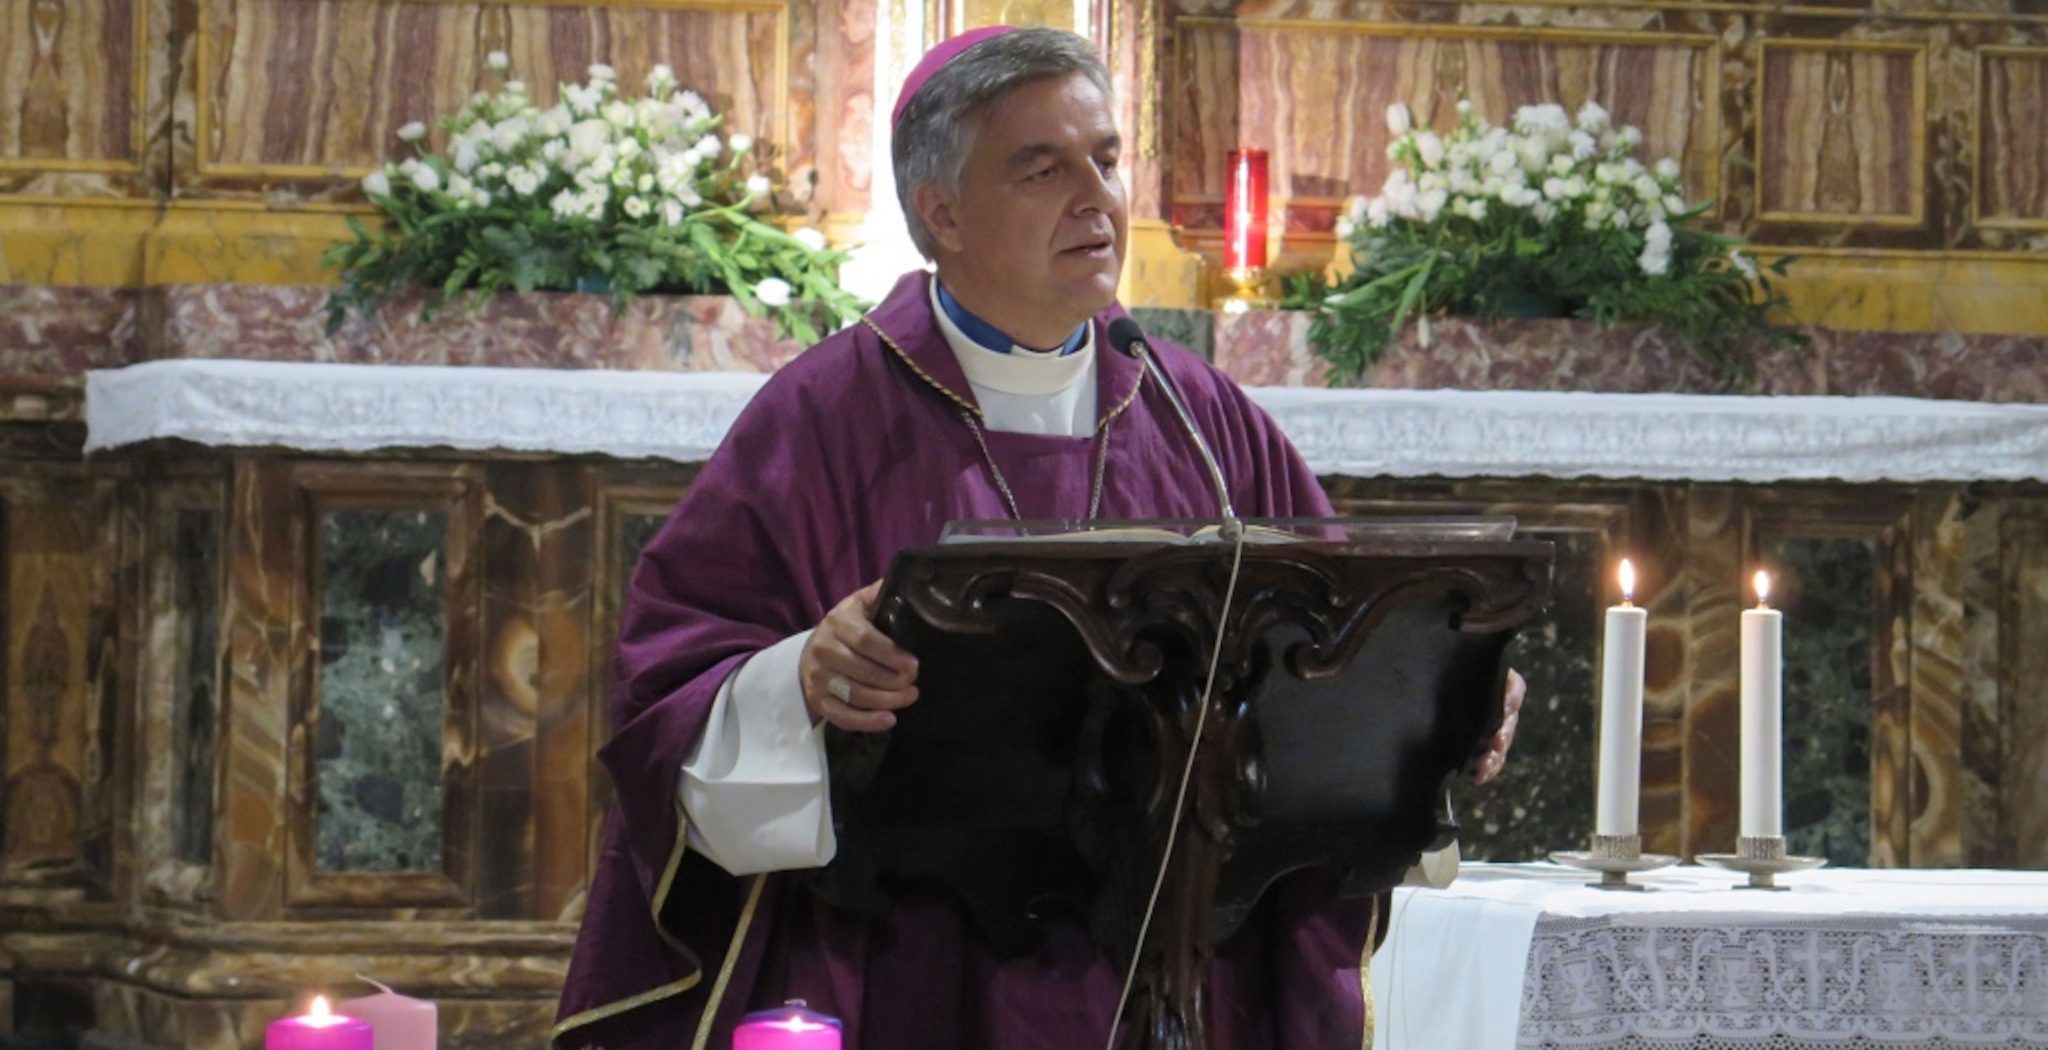 Gianpiero Palmieri, obispo auxiliar de Roma, presidió la eucaristía